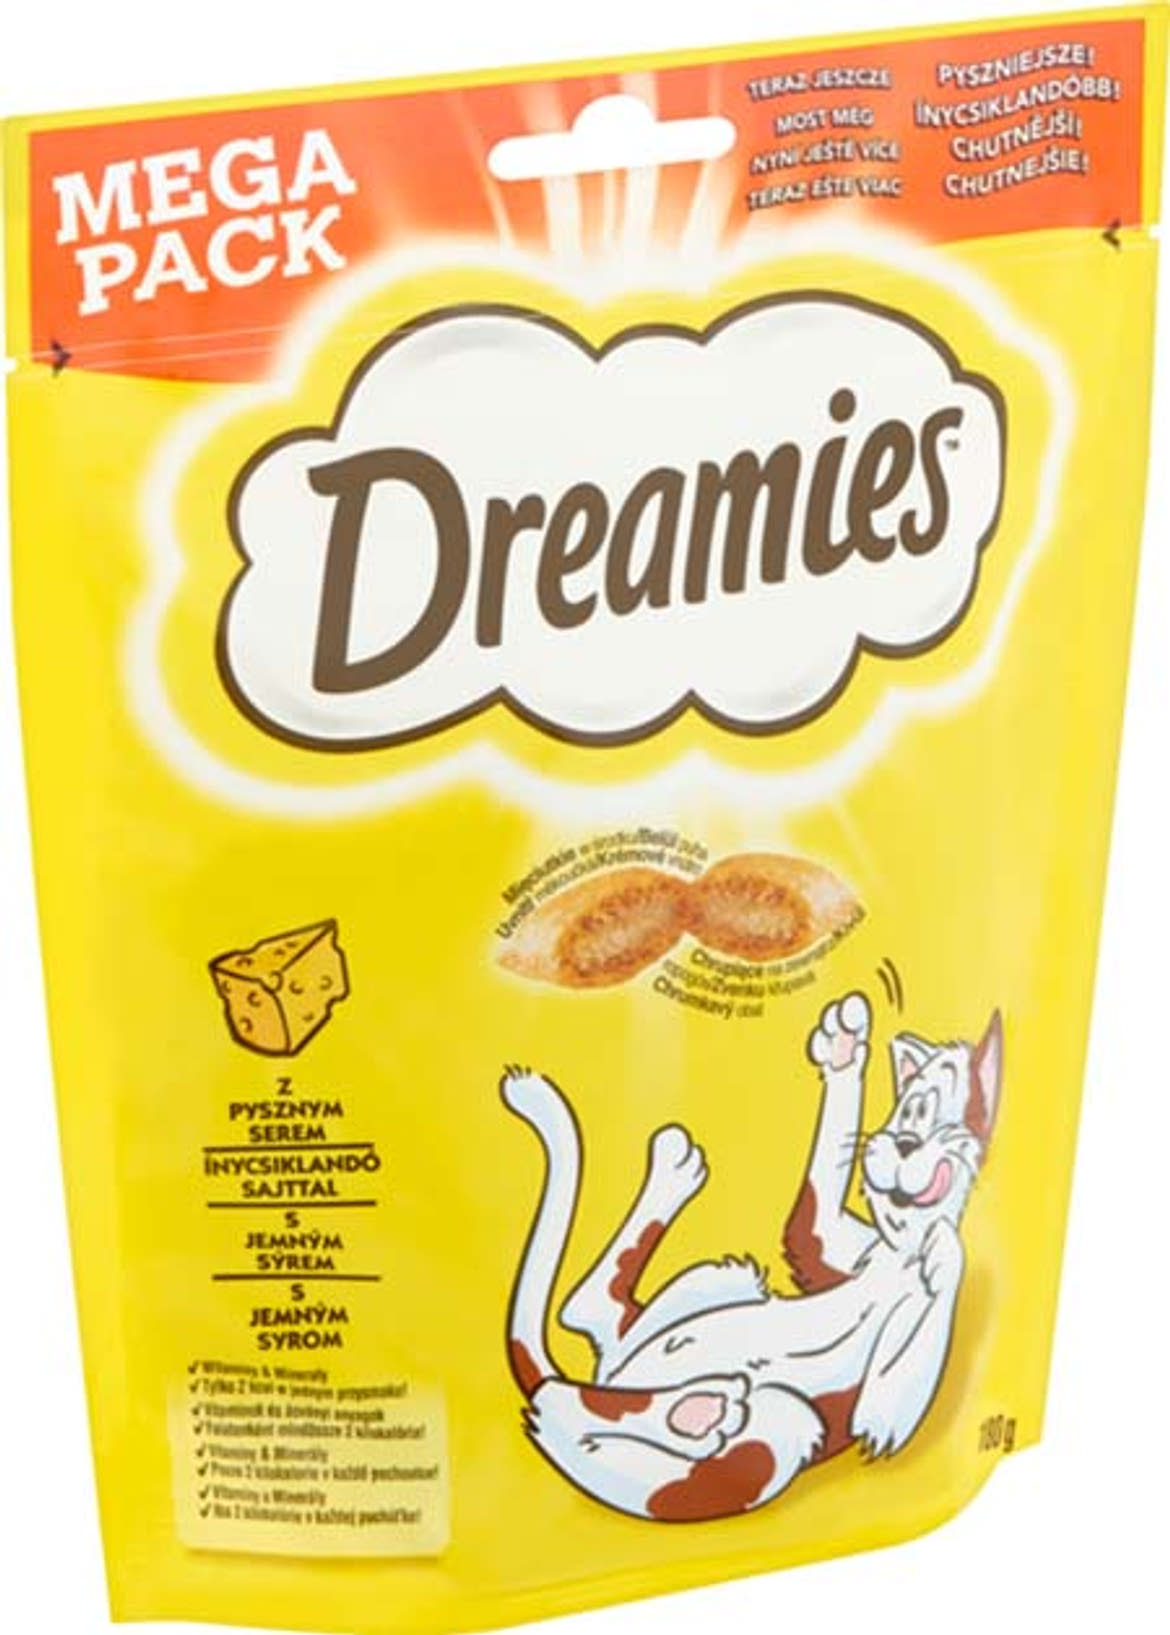 Dreamies macska jutalomfalat MEGA sajt